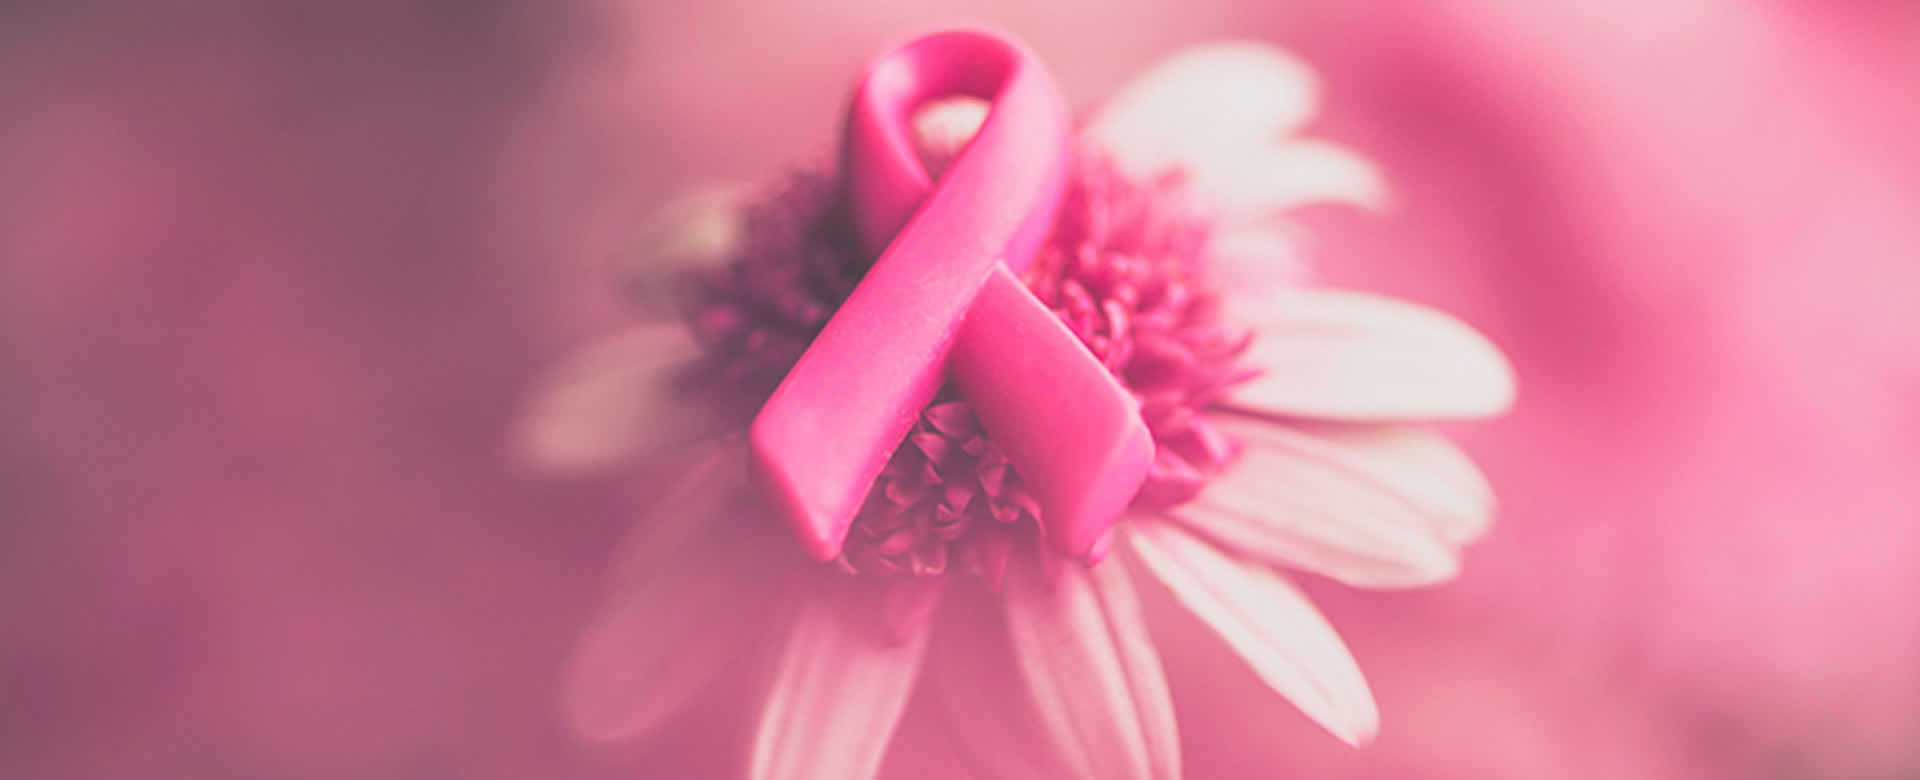 Lazo rosado es el símbolo de la lucha contra el cáncer de seno